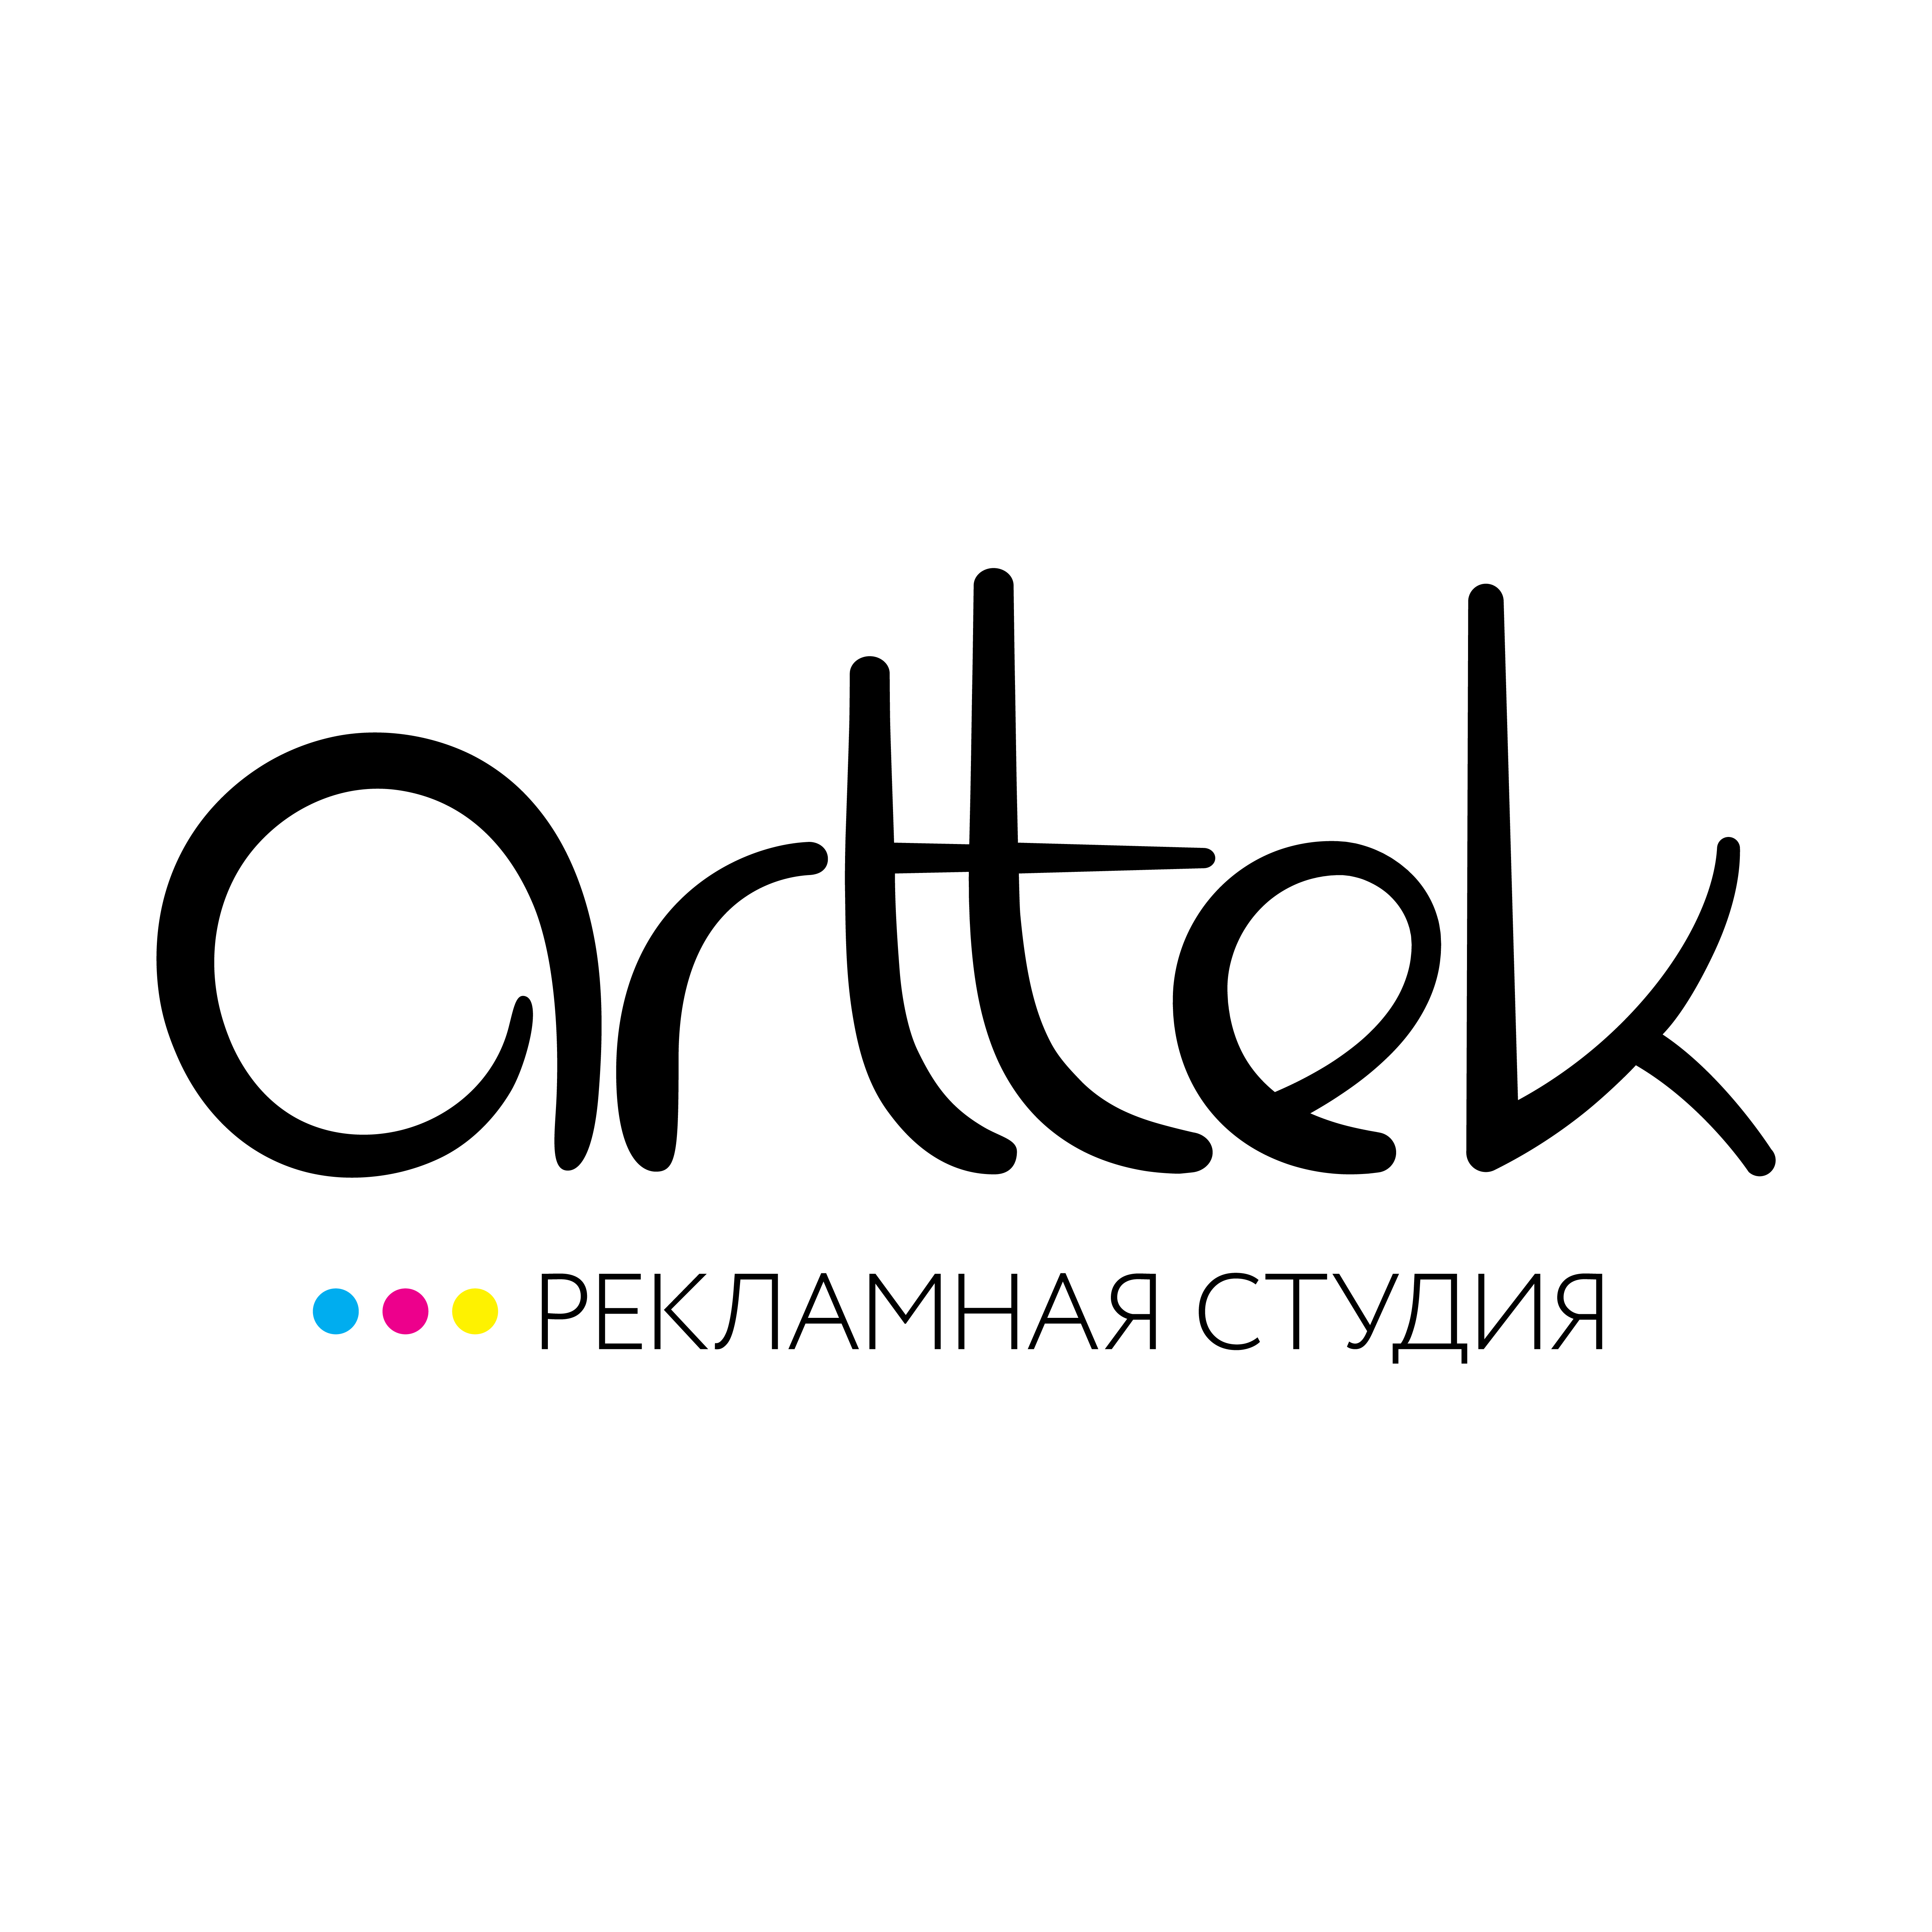 Рекламная студия логотип. Arttek логотип. Ра студия. Братья рим пермь